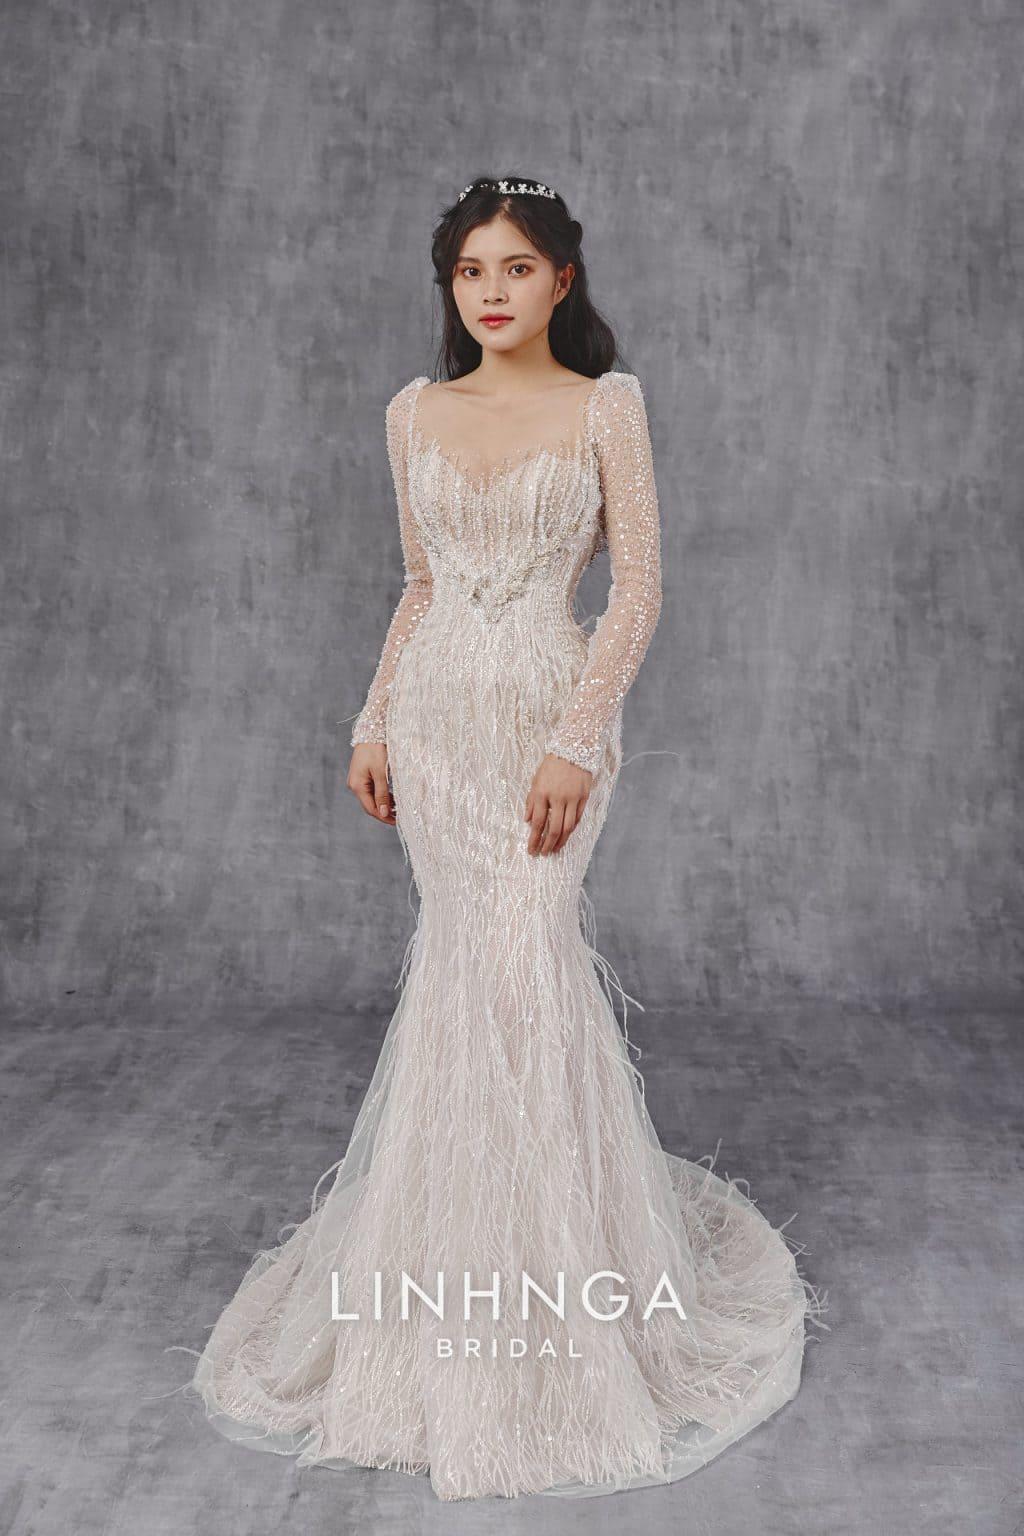 Thiết kế áo cưới của Linh Nga Bridal